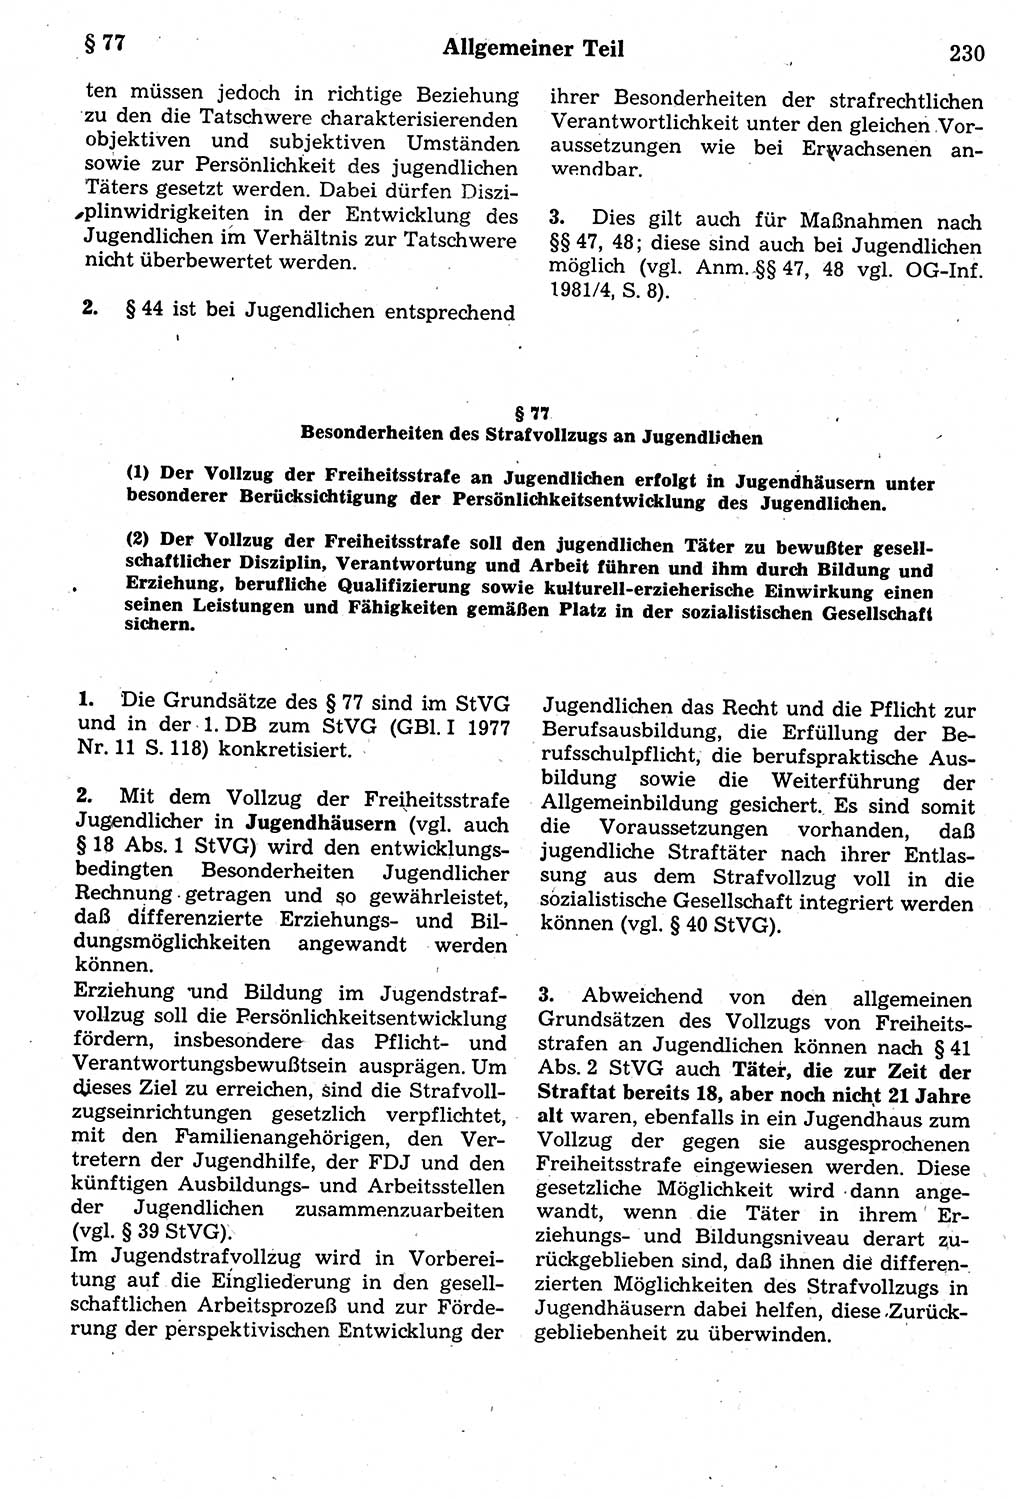 Strafrecht der Deutschen Demokratischen Republik (DDR), Kommentar zum Strafgesetzbuch (StGB) 1987, Seite 230 (Strafr. DDR Komm. StGB 1987, S. 230)